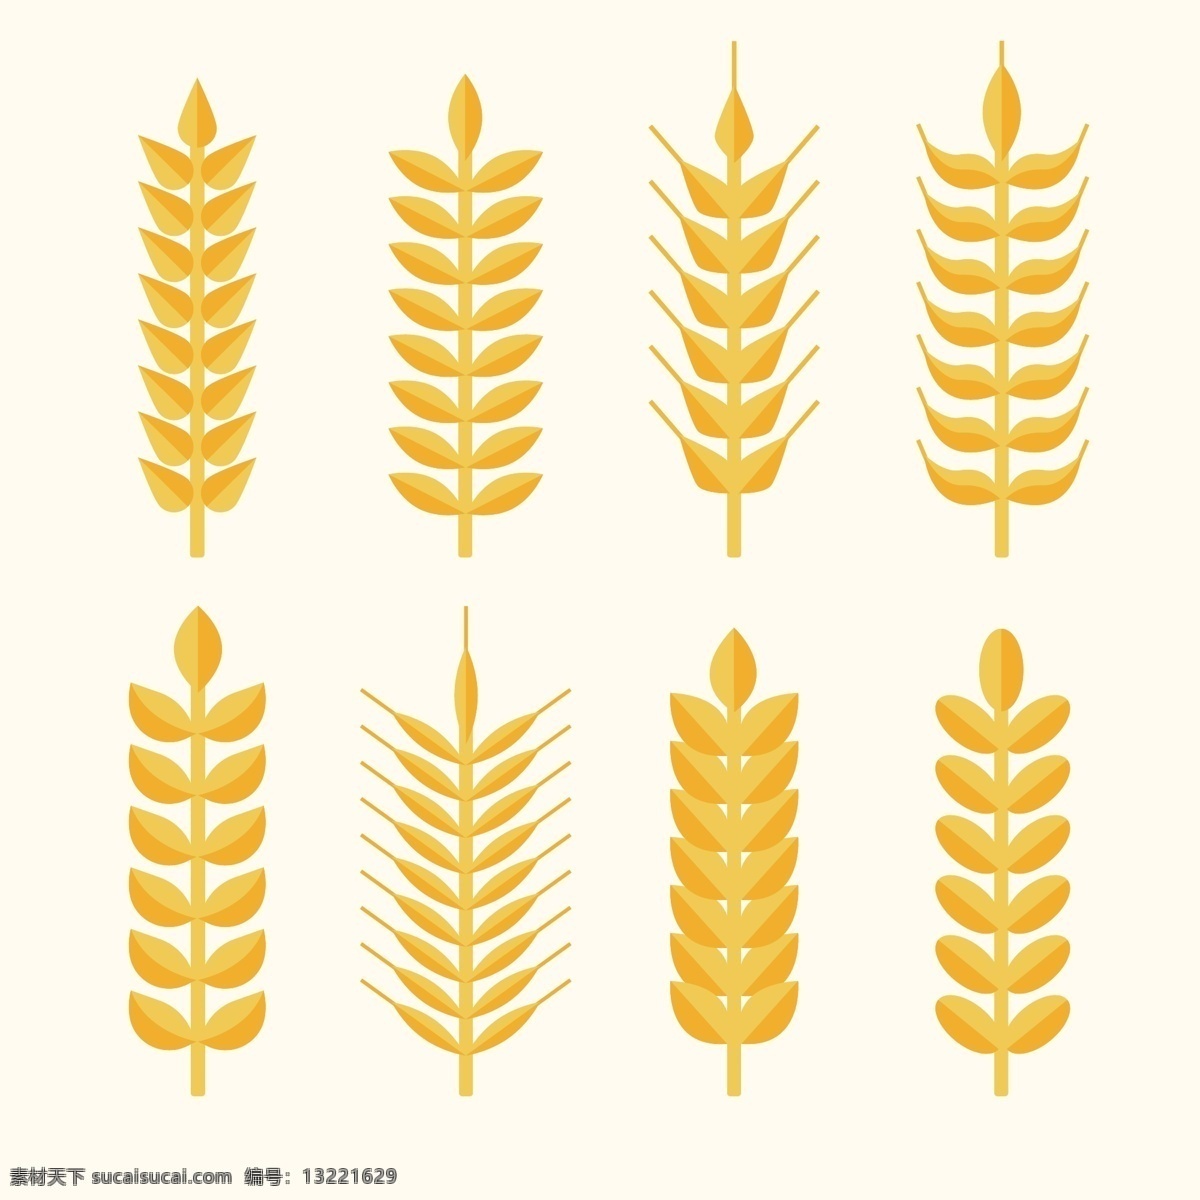 款 金色 小麦 合集 麦穗 农业 简约 丰收 金色麦穗 粮食 小麦合集 小麦矢量图 麦子 平面设计 农作物 艺术插画 小麦插画 小麦图标 谷物 设计元素 五谷